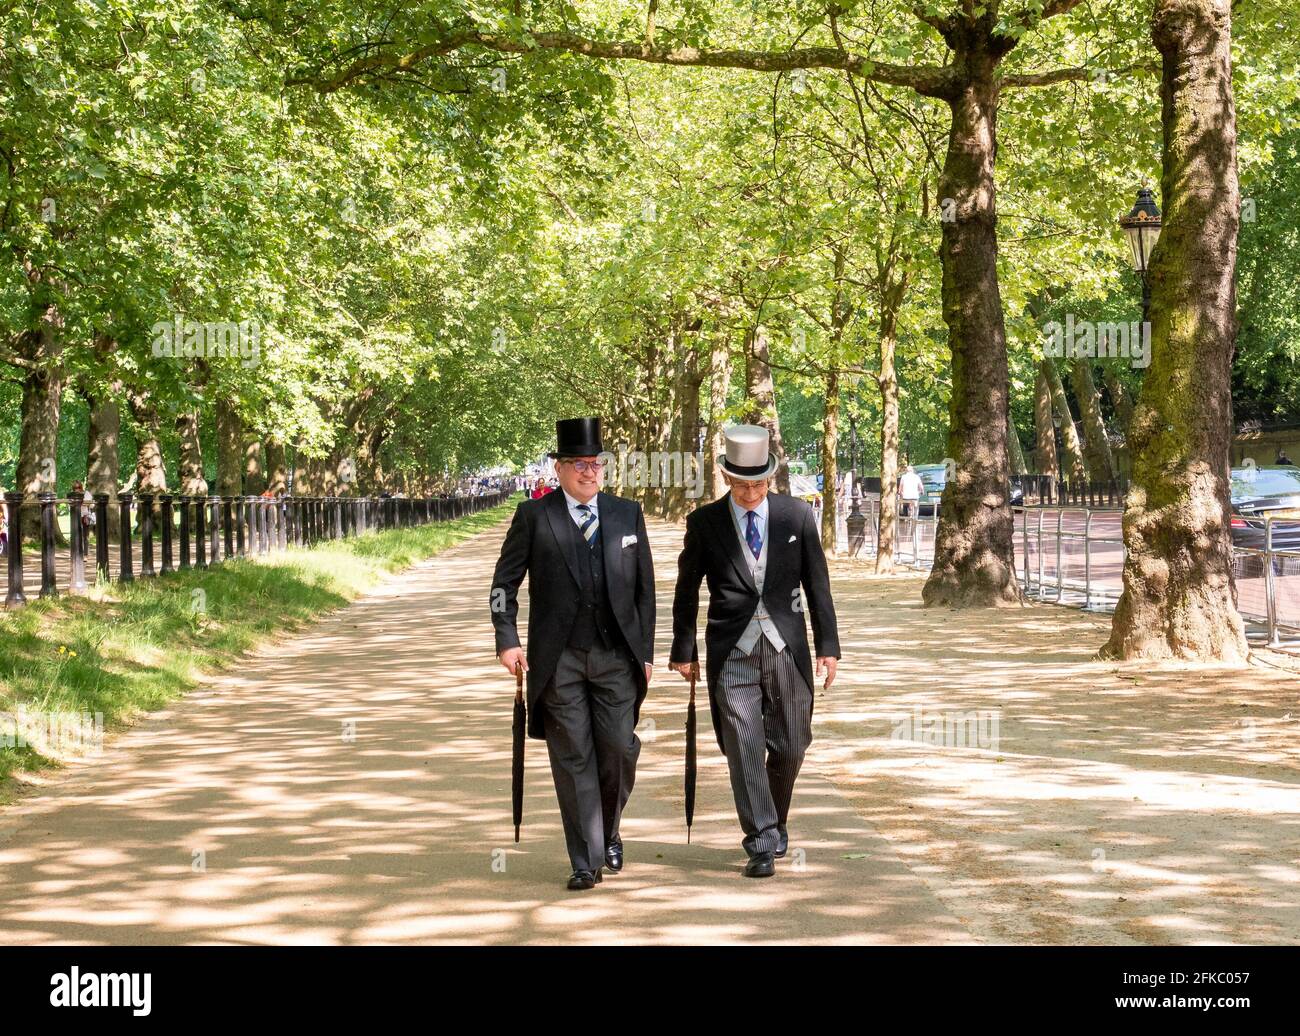 Por la mañana los hombres de traje y sombrero de copa paseando por Constitution Hill junto con Green Park, Londres, Reino Unido. Foto de stock